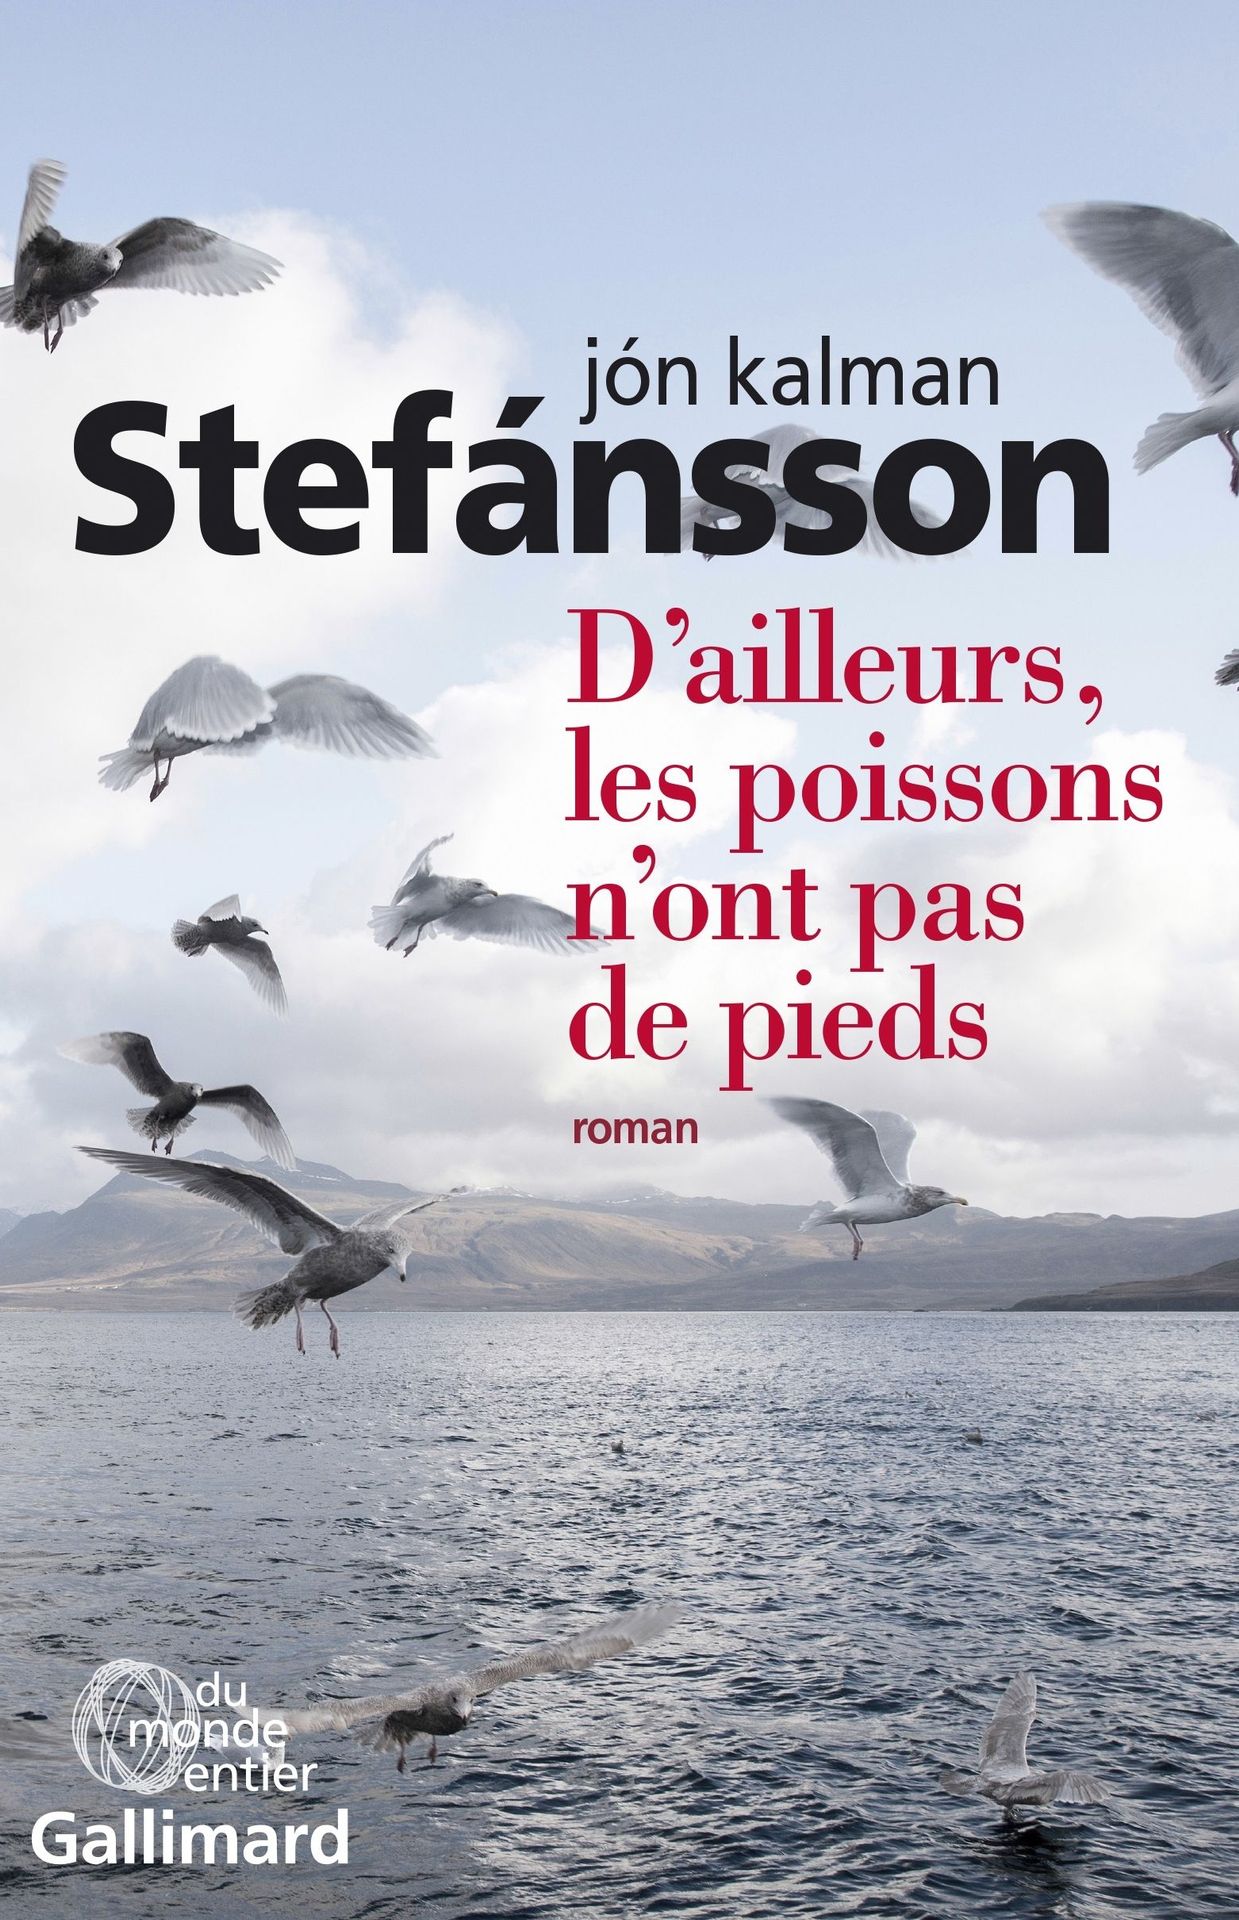 Première de couverture du roman "D’ailleurs, les poissons n’ont pas de pieds" de Jon Kalman Stefansson.